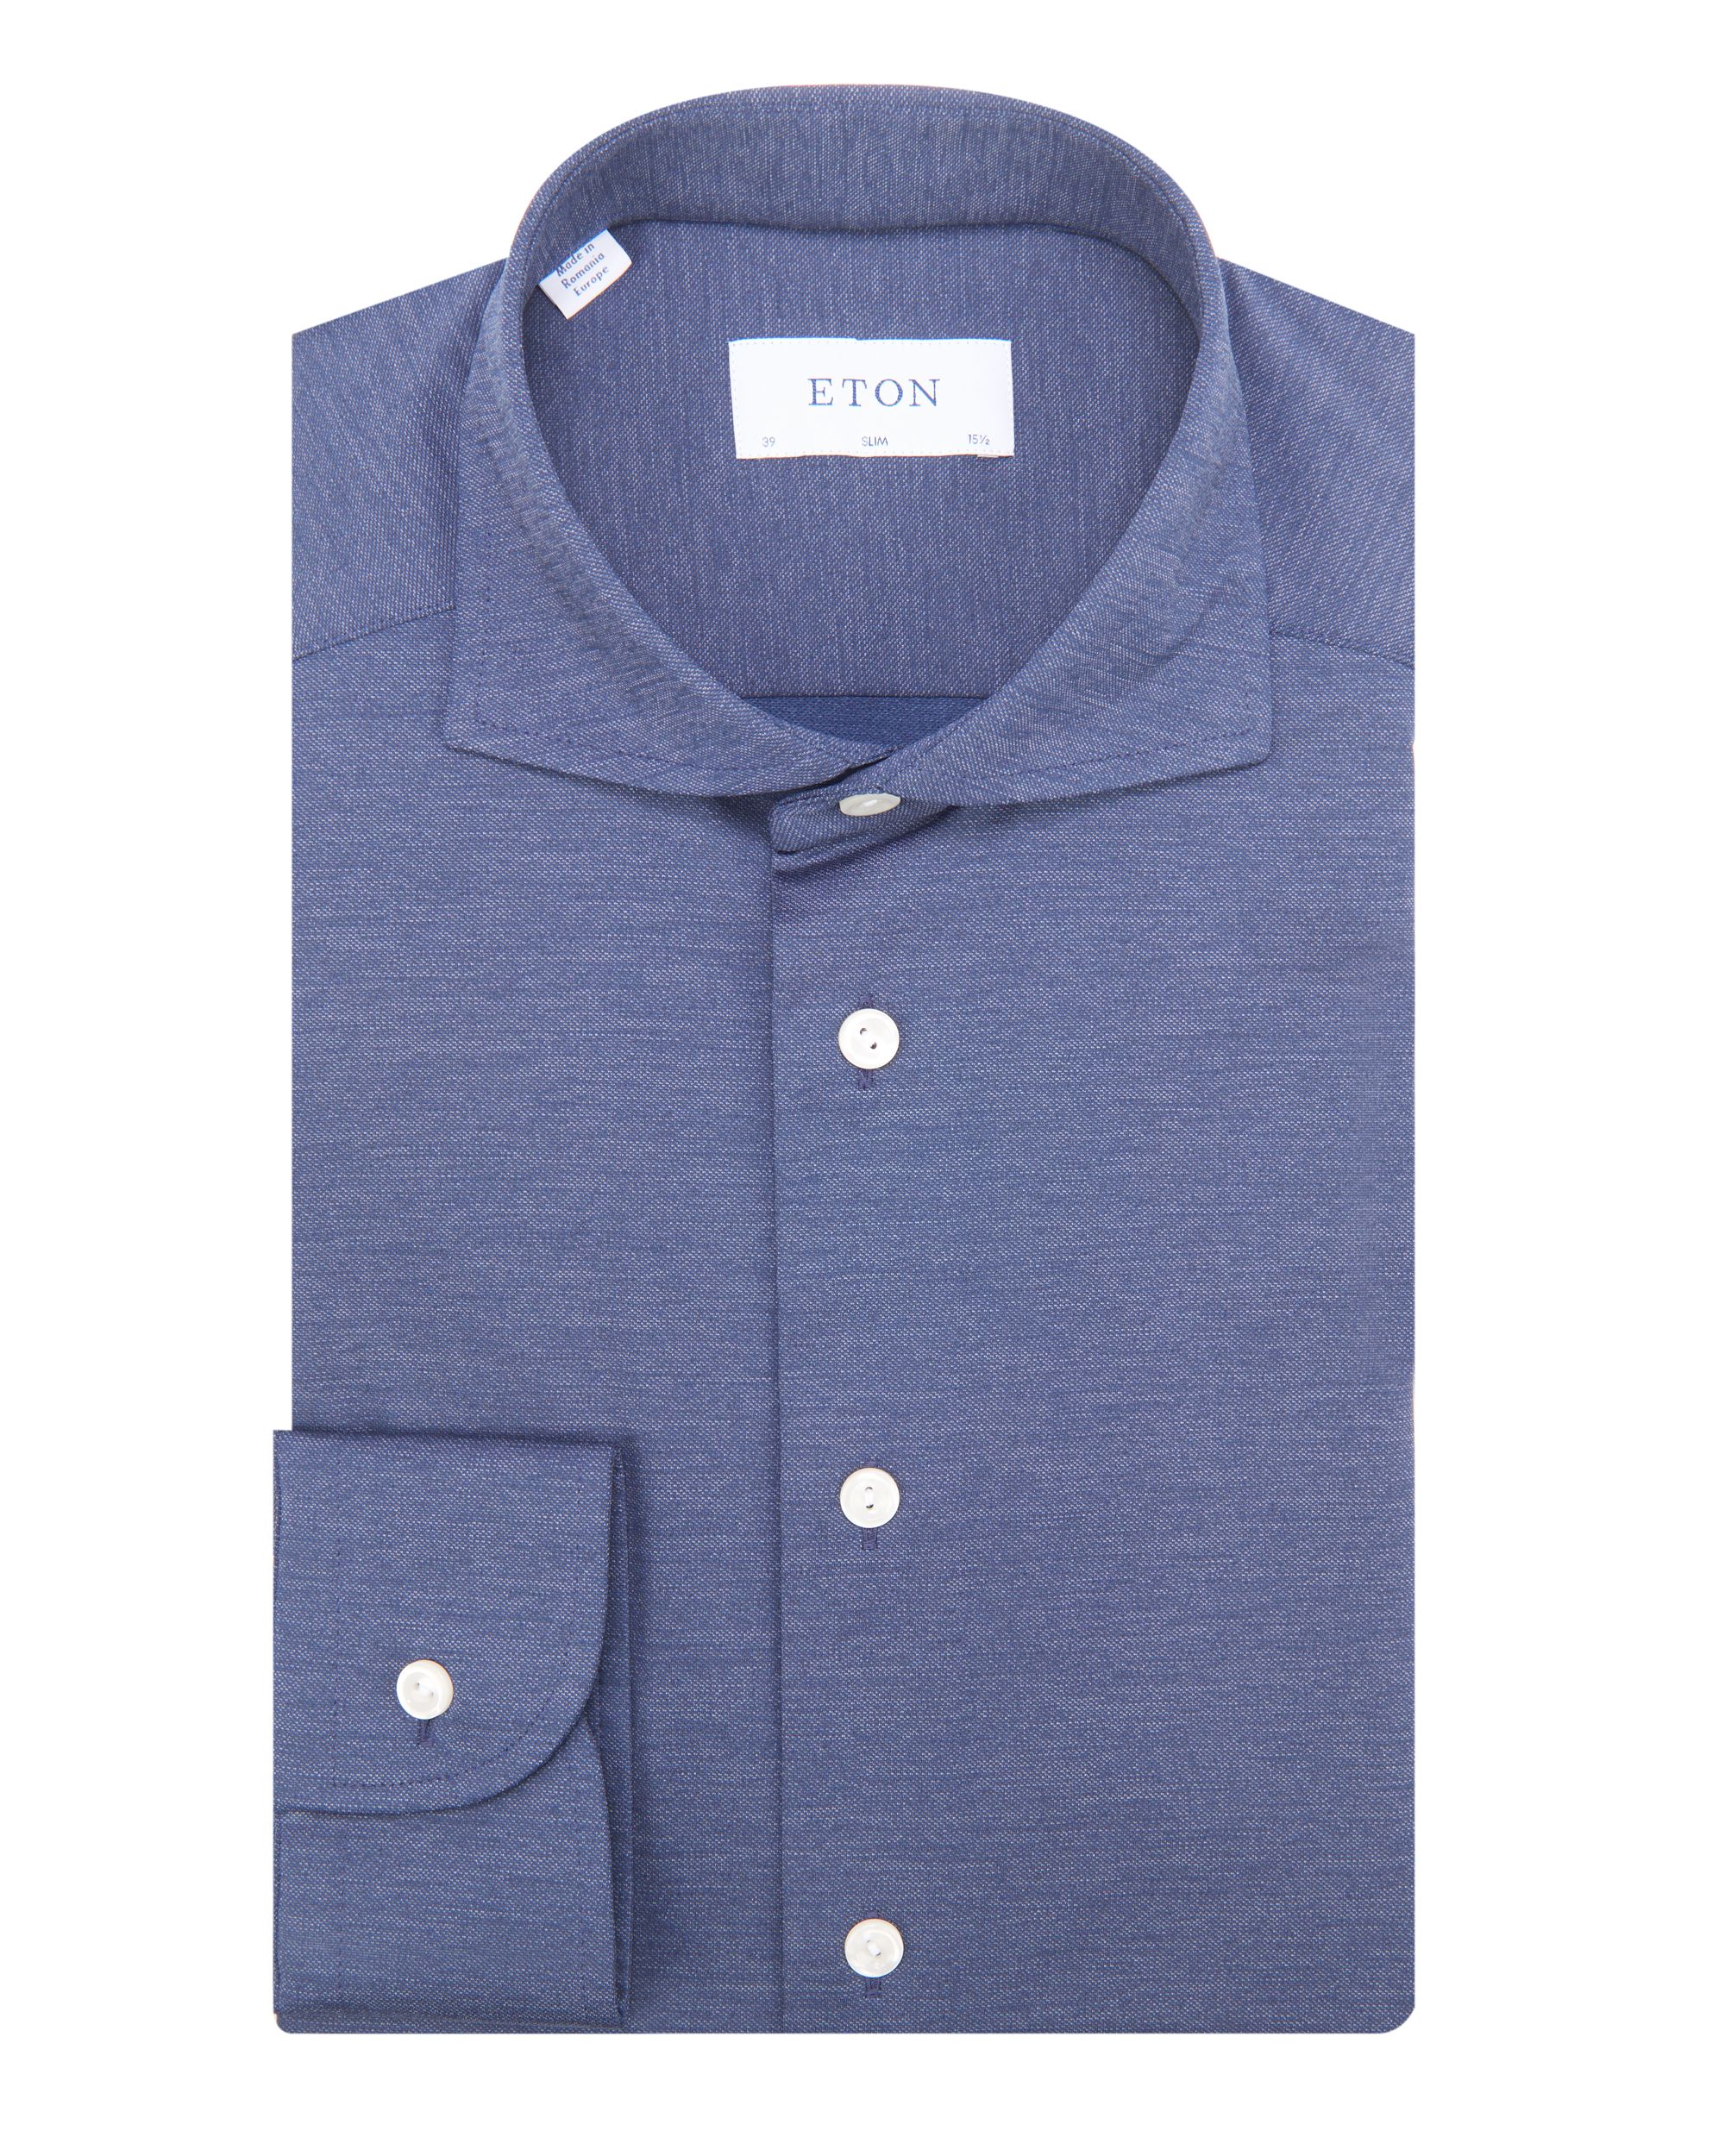 ETON Overhemd LM Donker blauw 078831-001-38